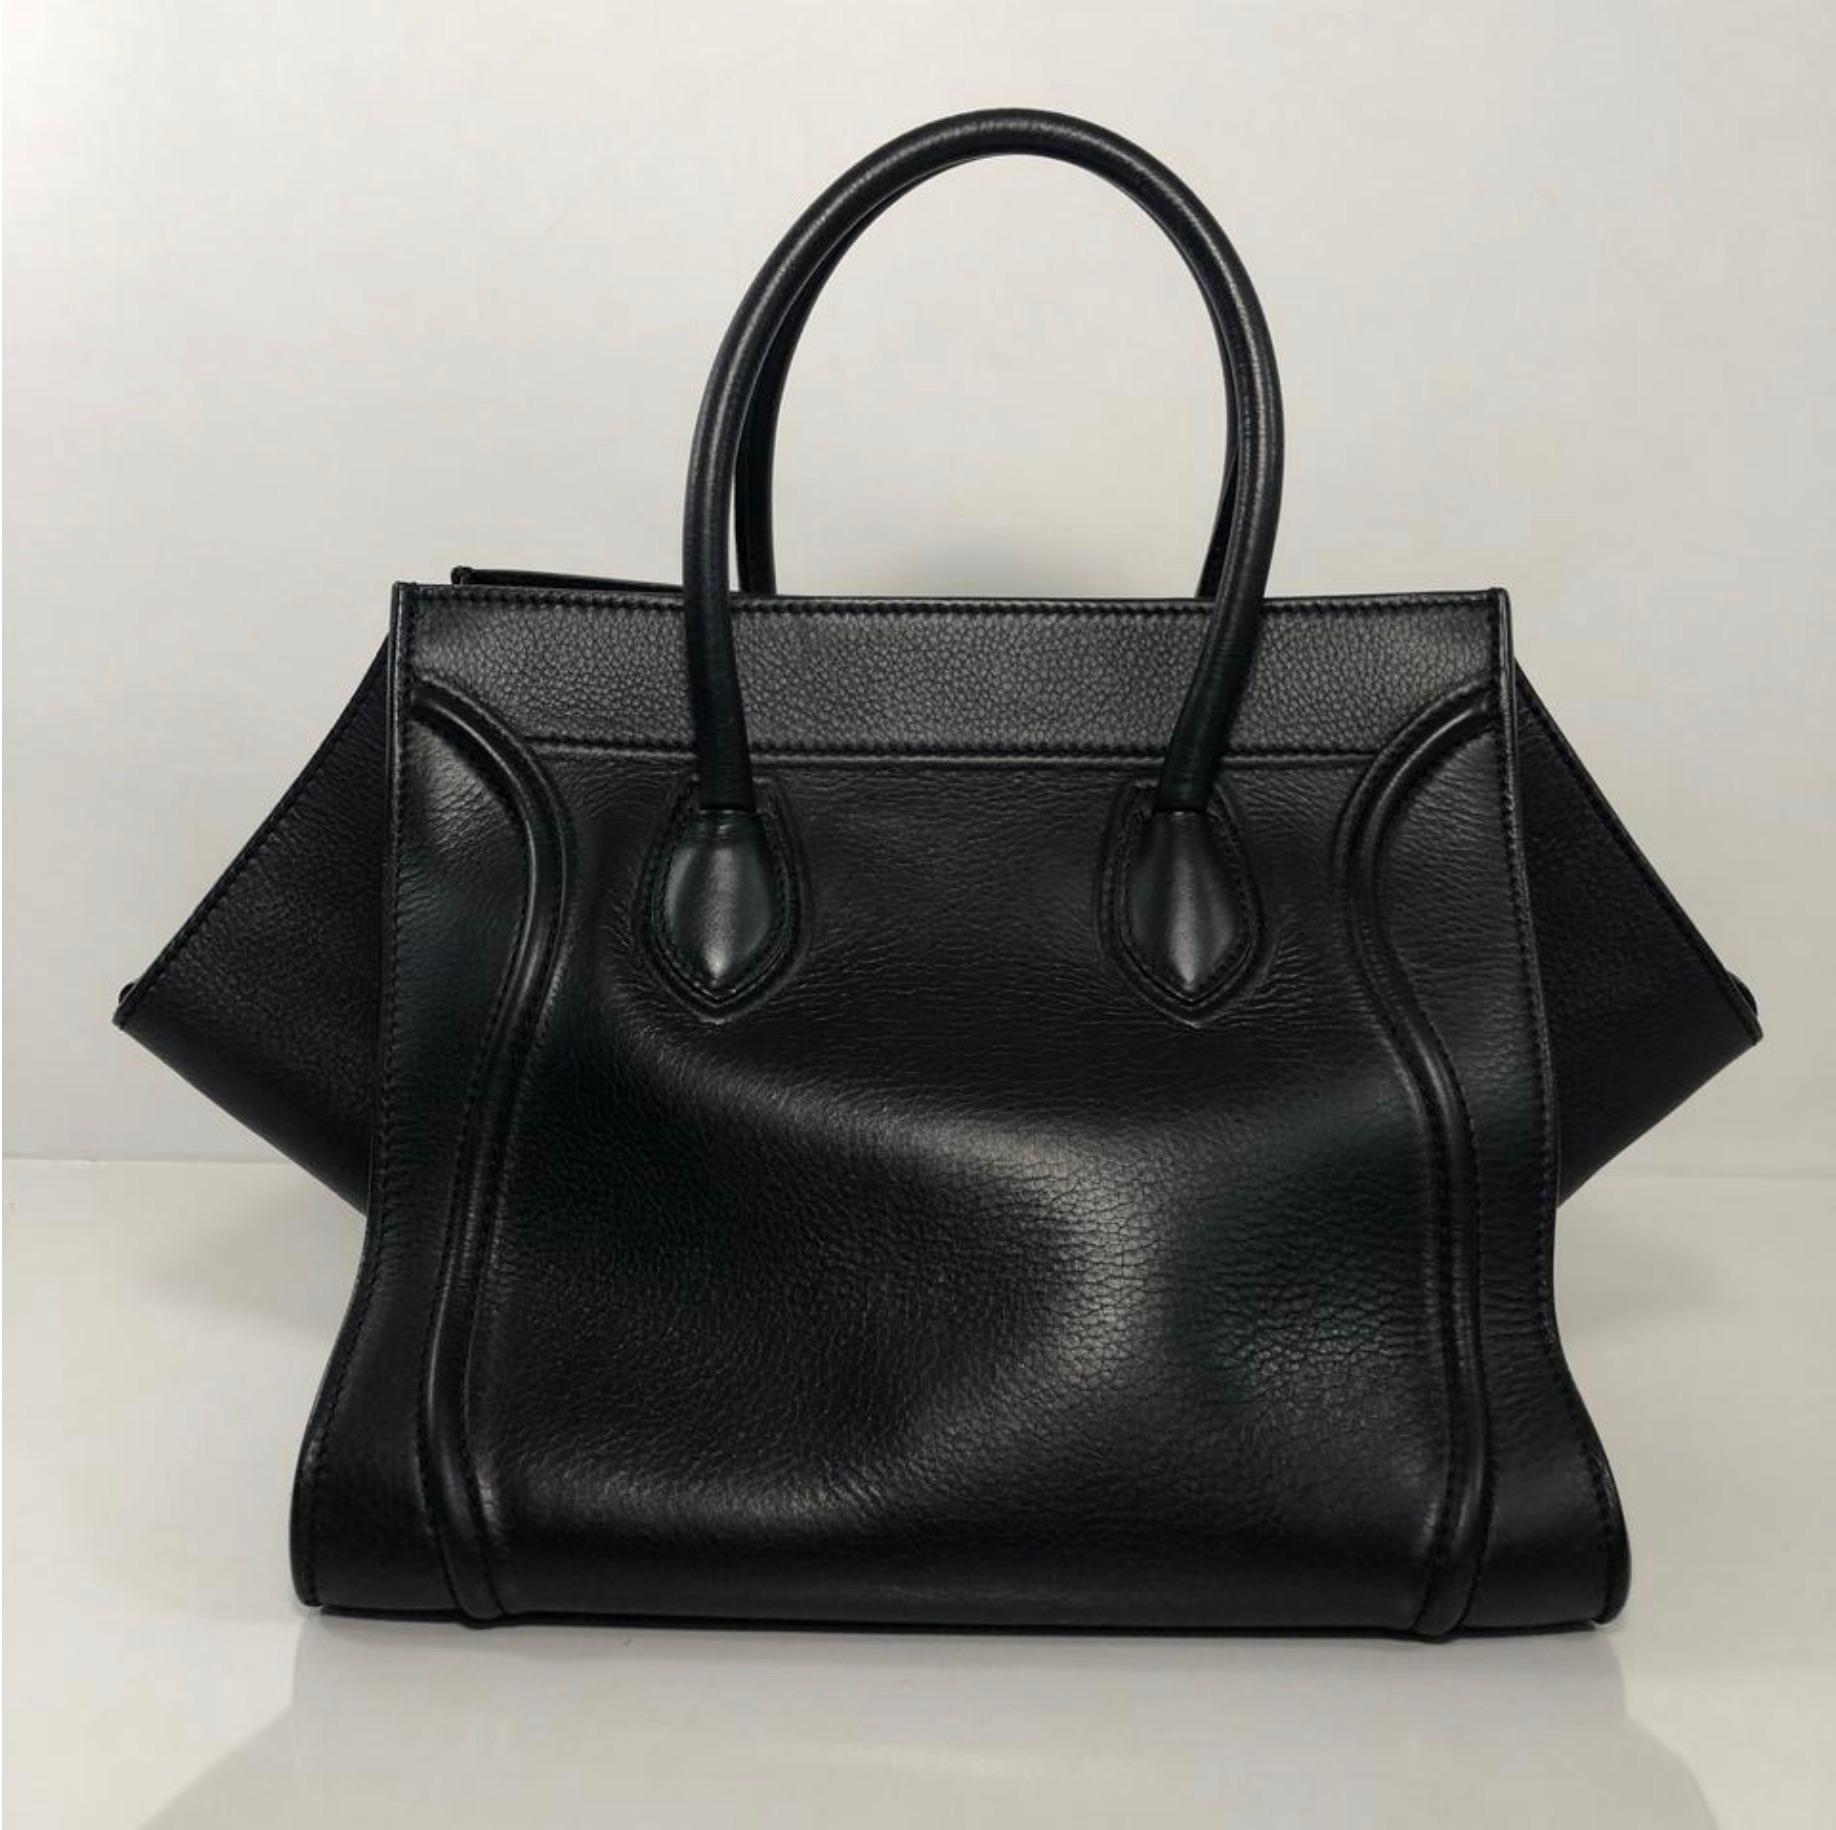 Celine Leather Phantom Medium Black Satchel Tote Handbag 1